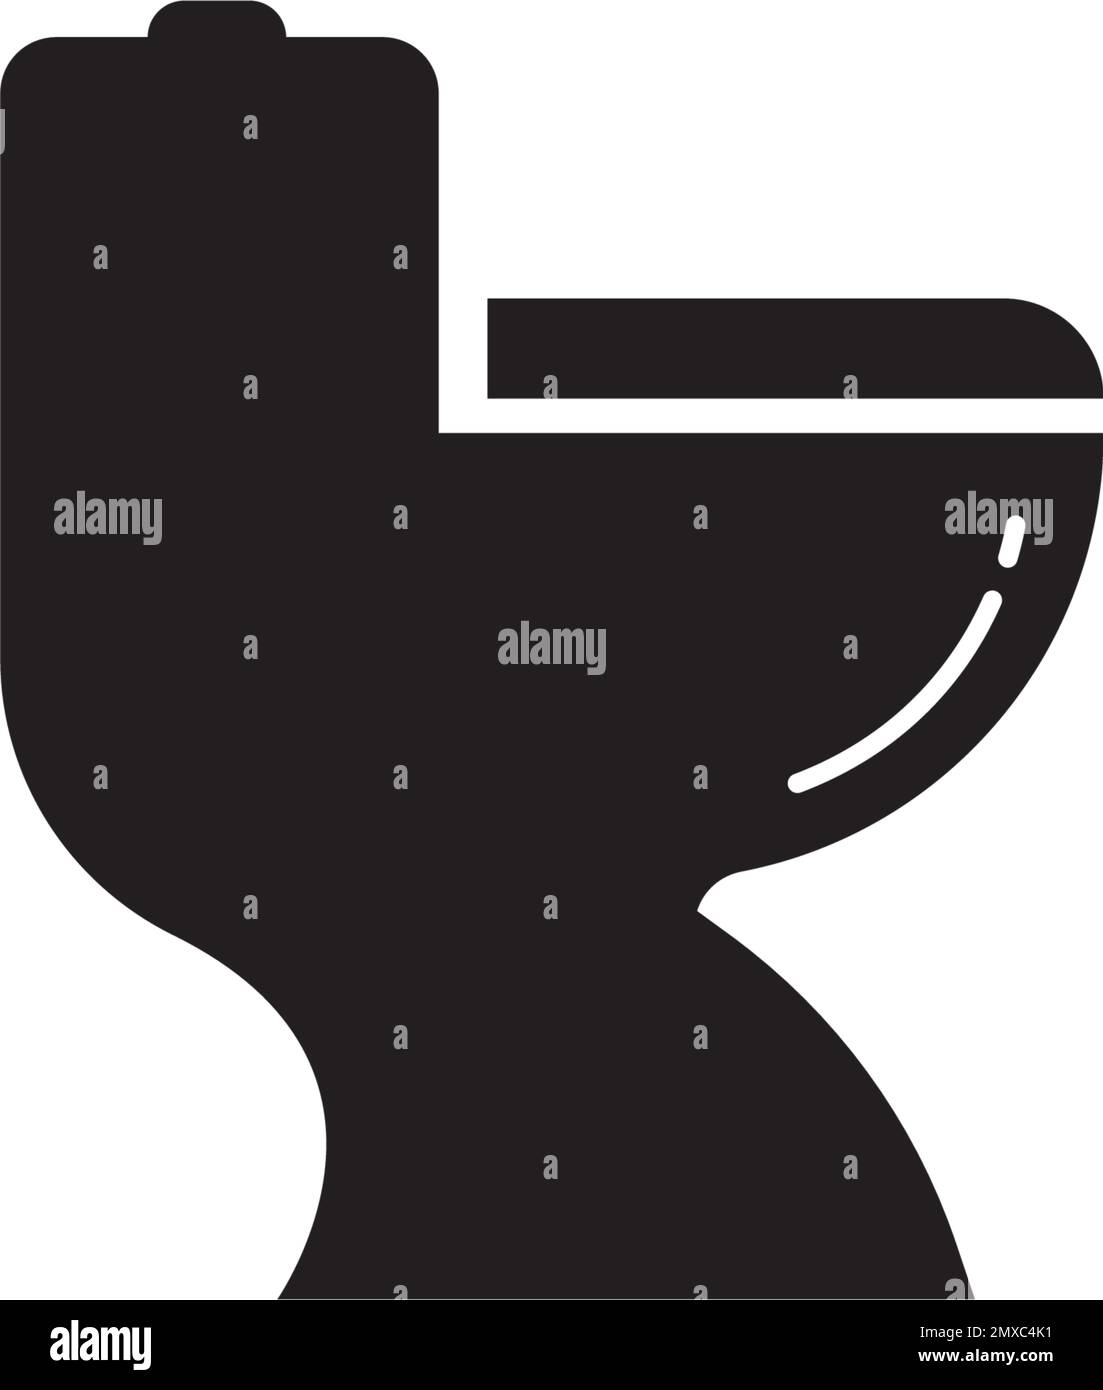 Logo-Design mit Toilettensymbol und Vektordarstellung. Stock Vektor